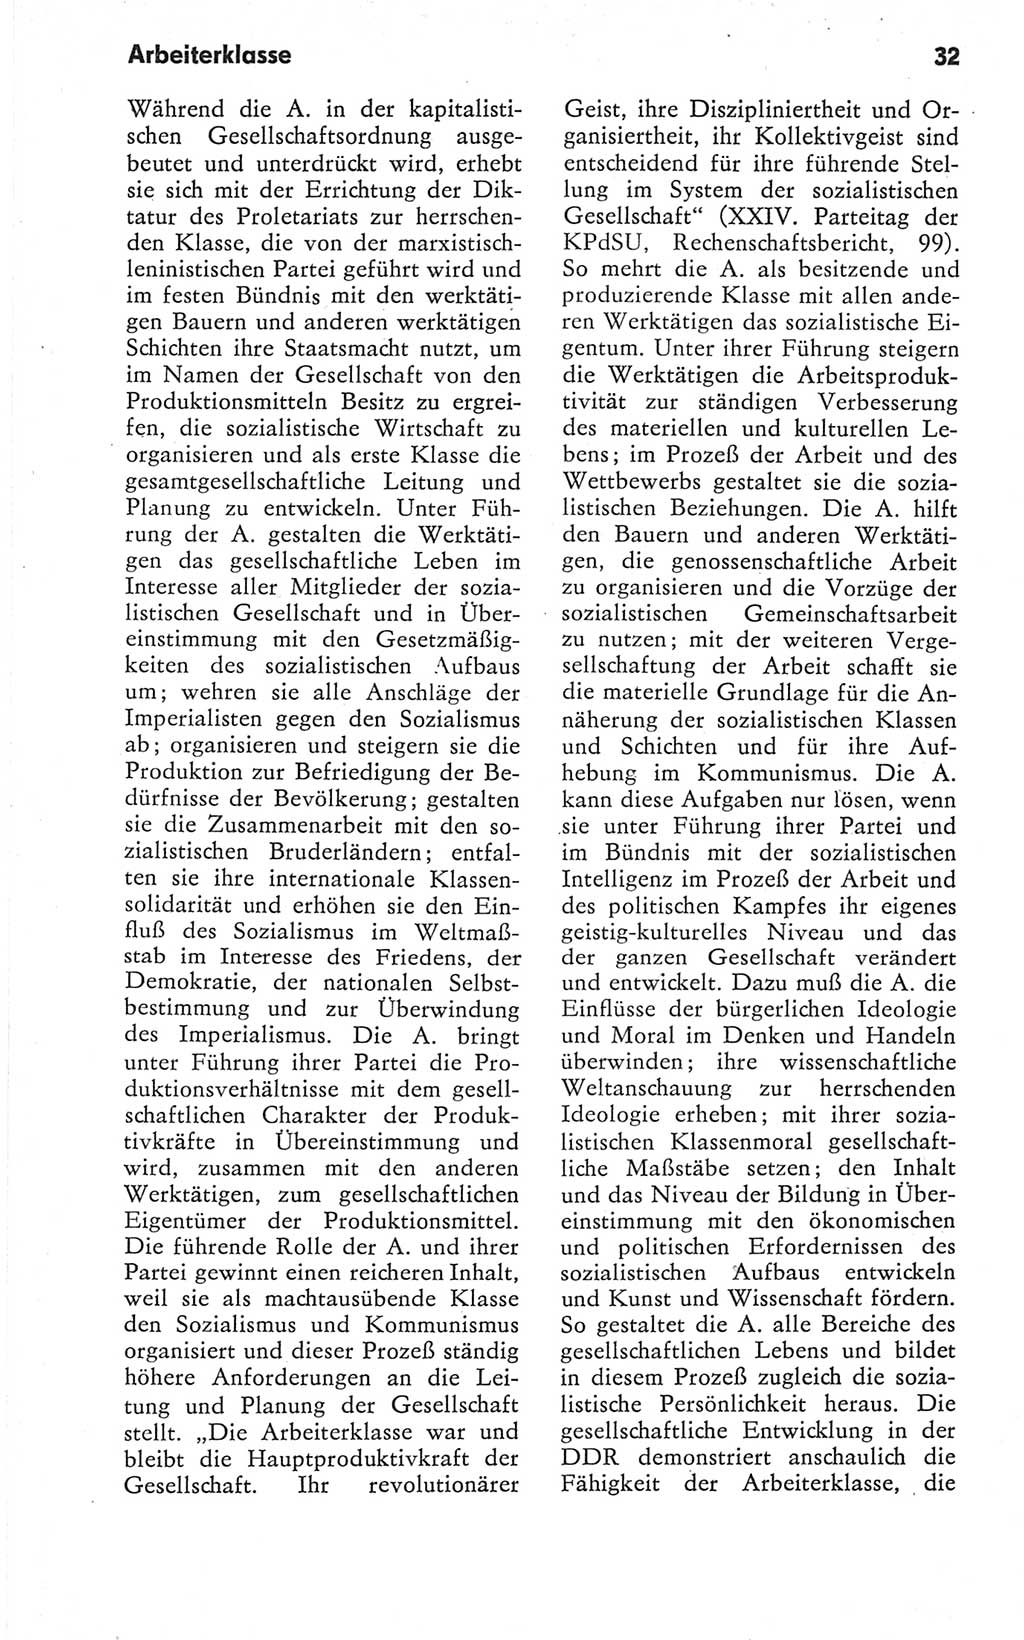 Kleines Wörterbuch der marxistisch-leninistischen Philosophie [Deutsche Demokratische Republik (DDR)] 1979, Seite 32 (Kl. Wb. ML Phil. DDR 1979, S. 32)